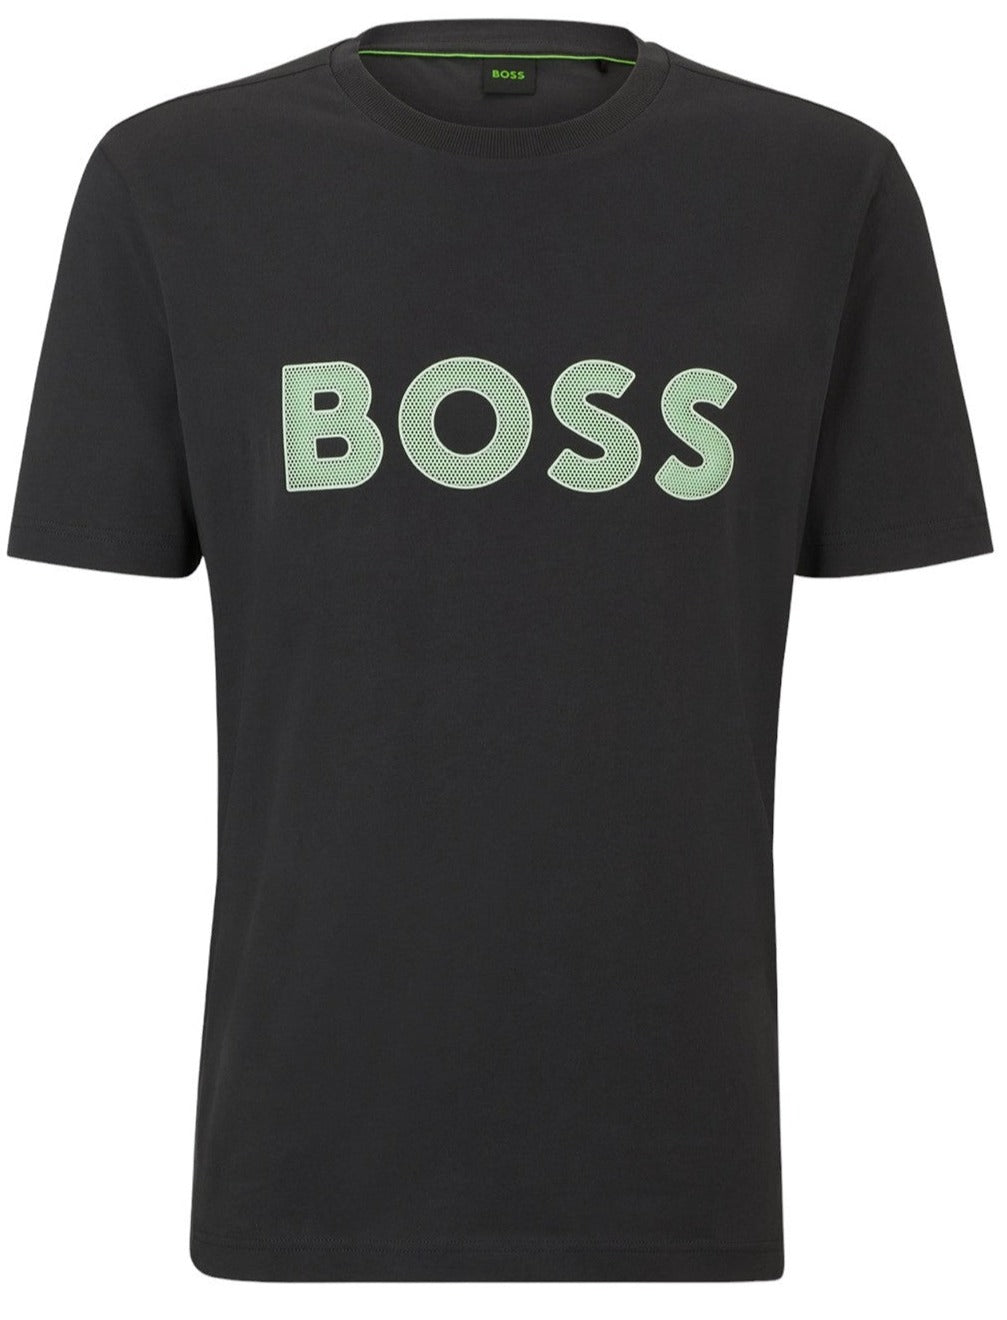 Boss T-shirt Tee